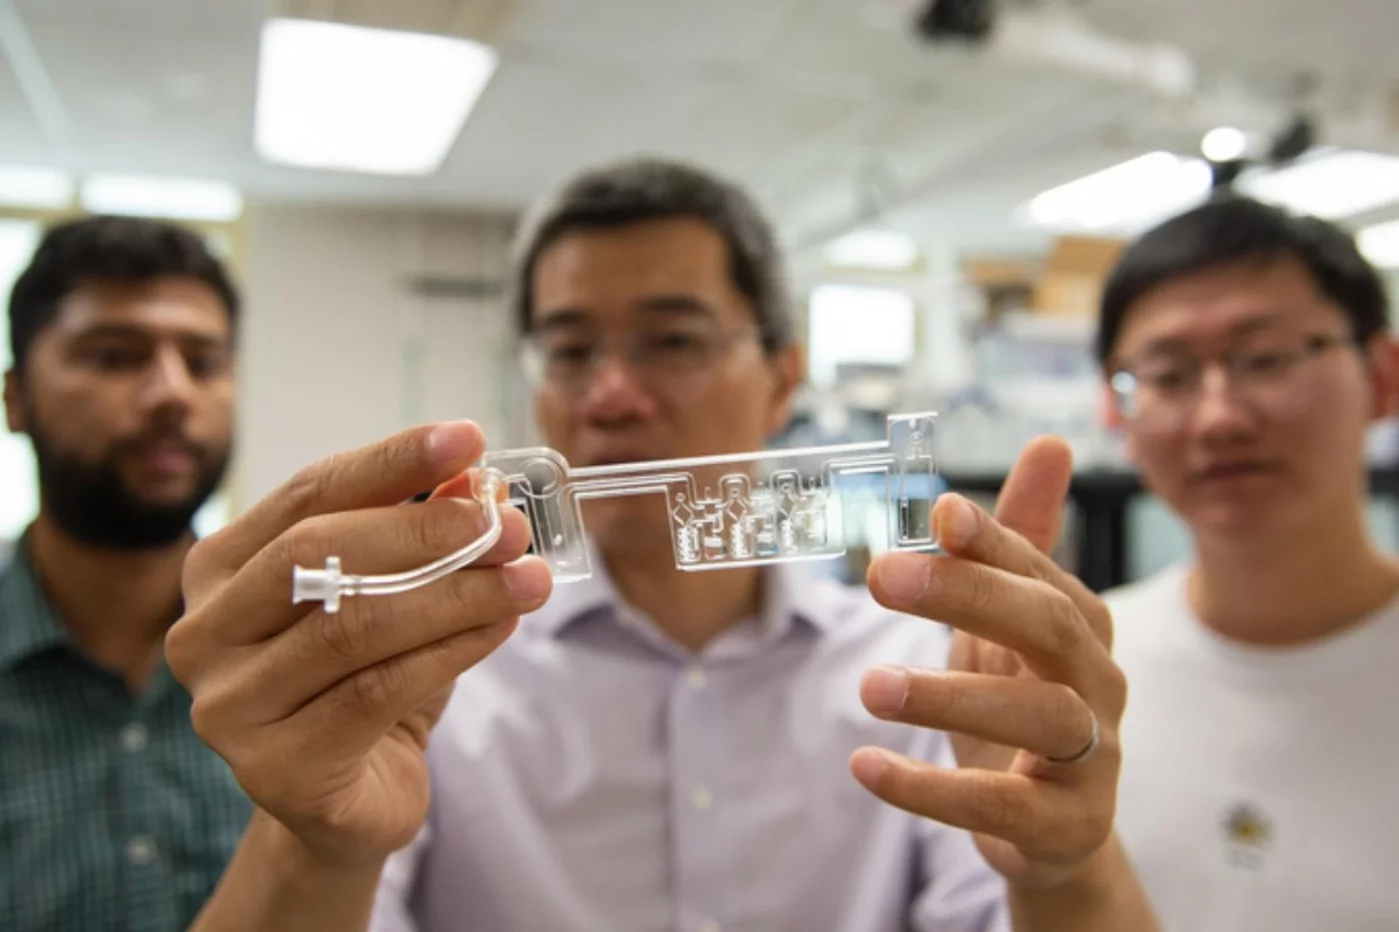 Los investigadores de la Penn State presentan su prototipo de autotest de covid.